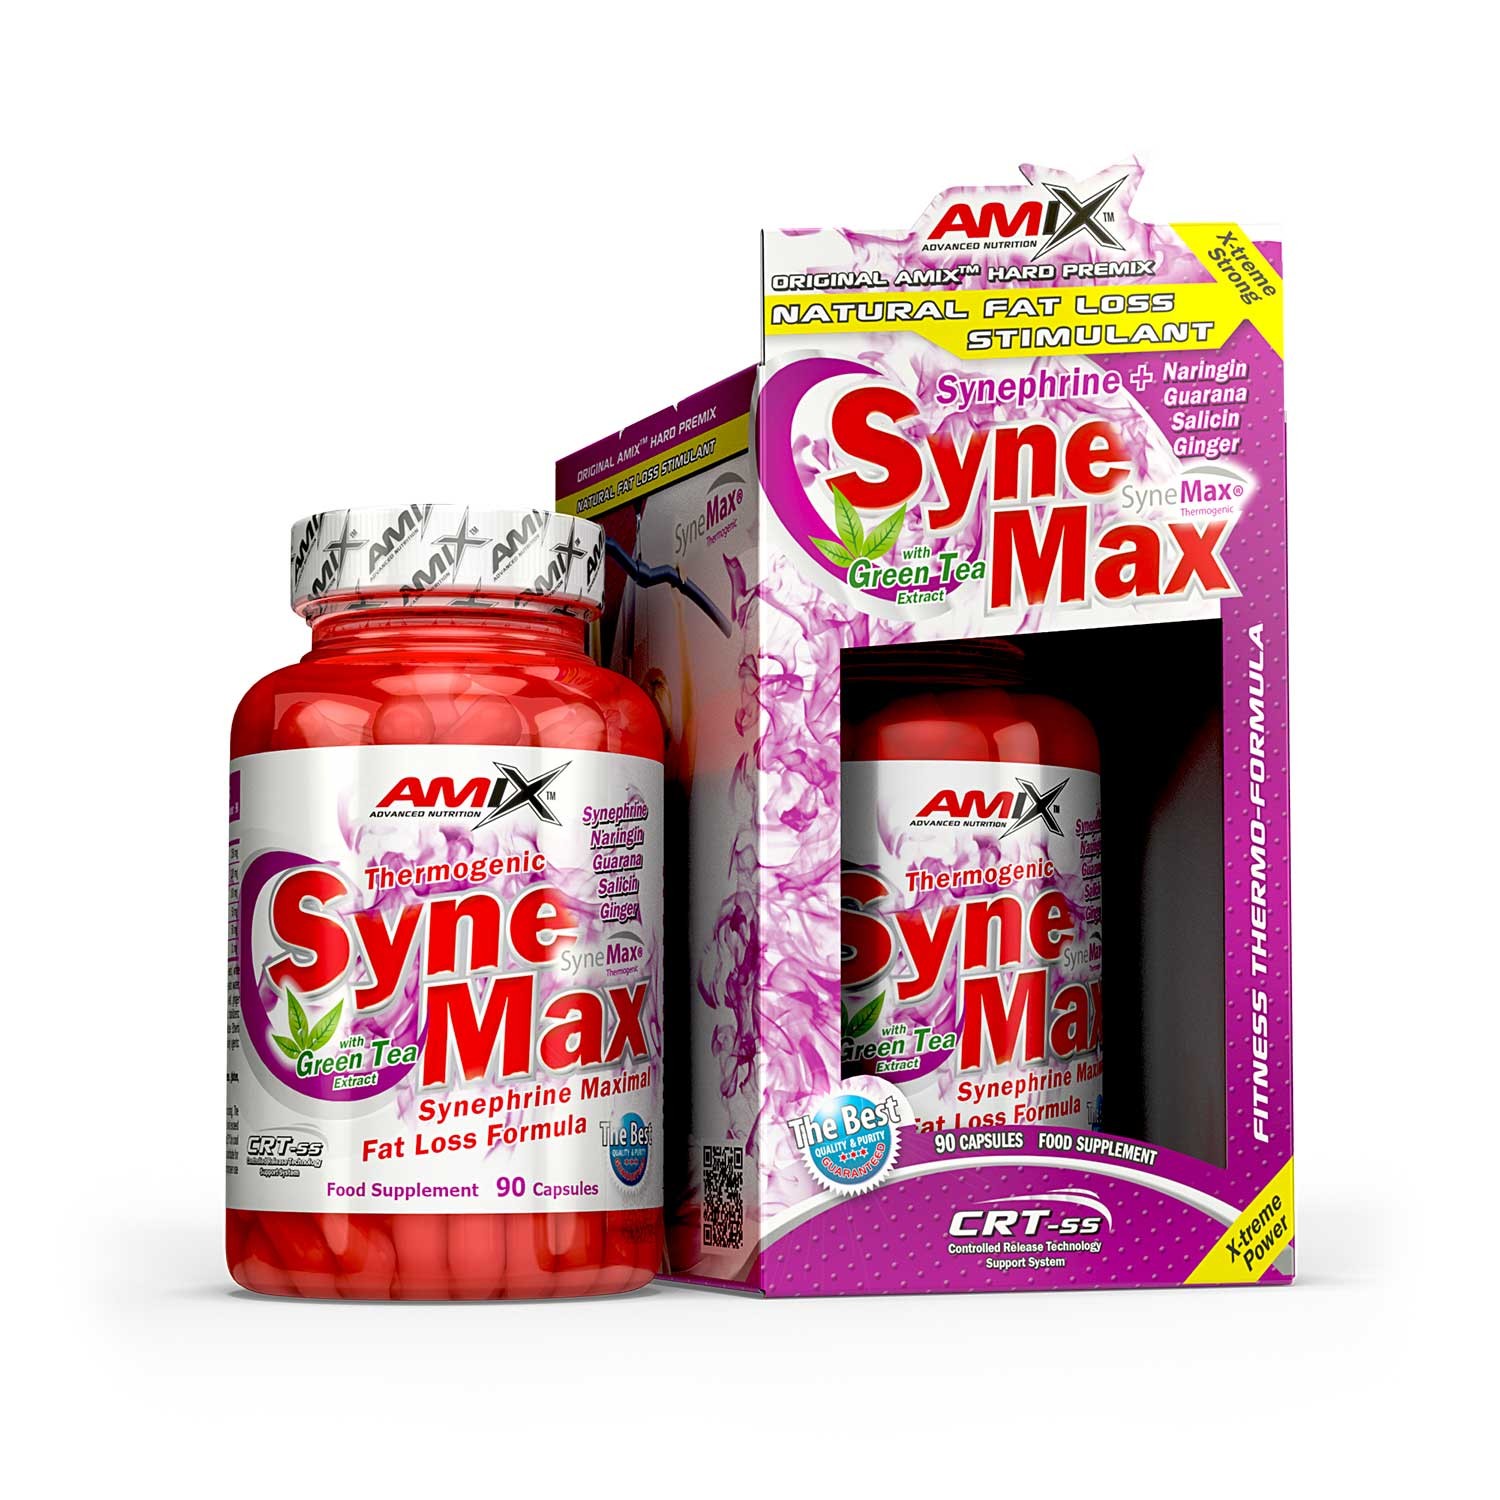 Amix SyneMax 90 kapslí